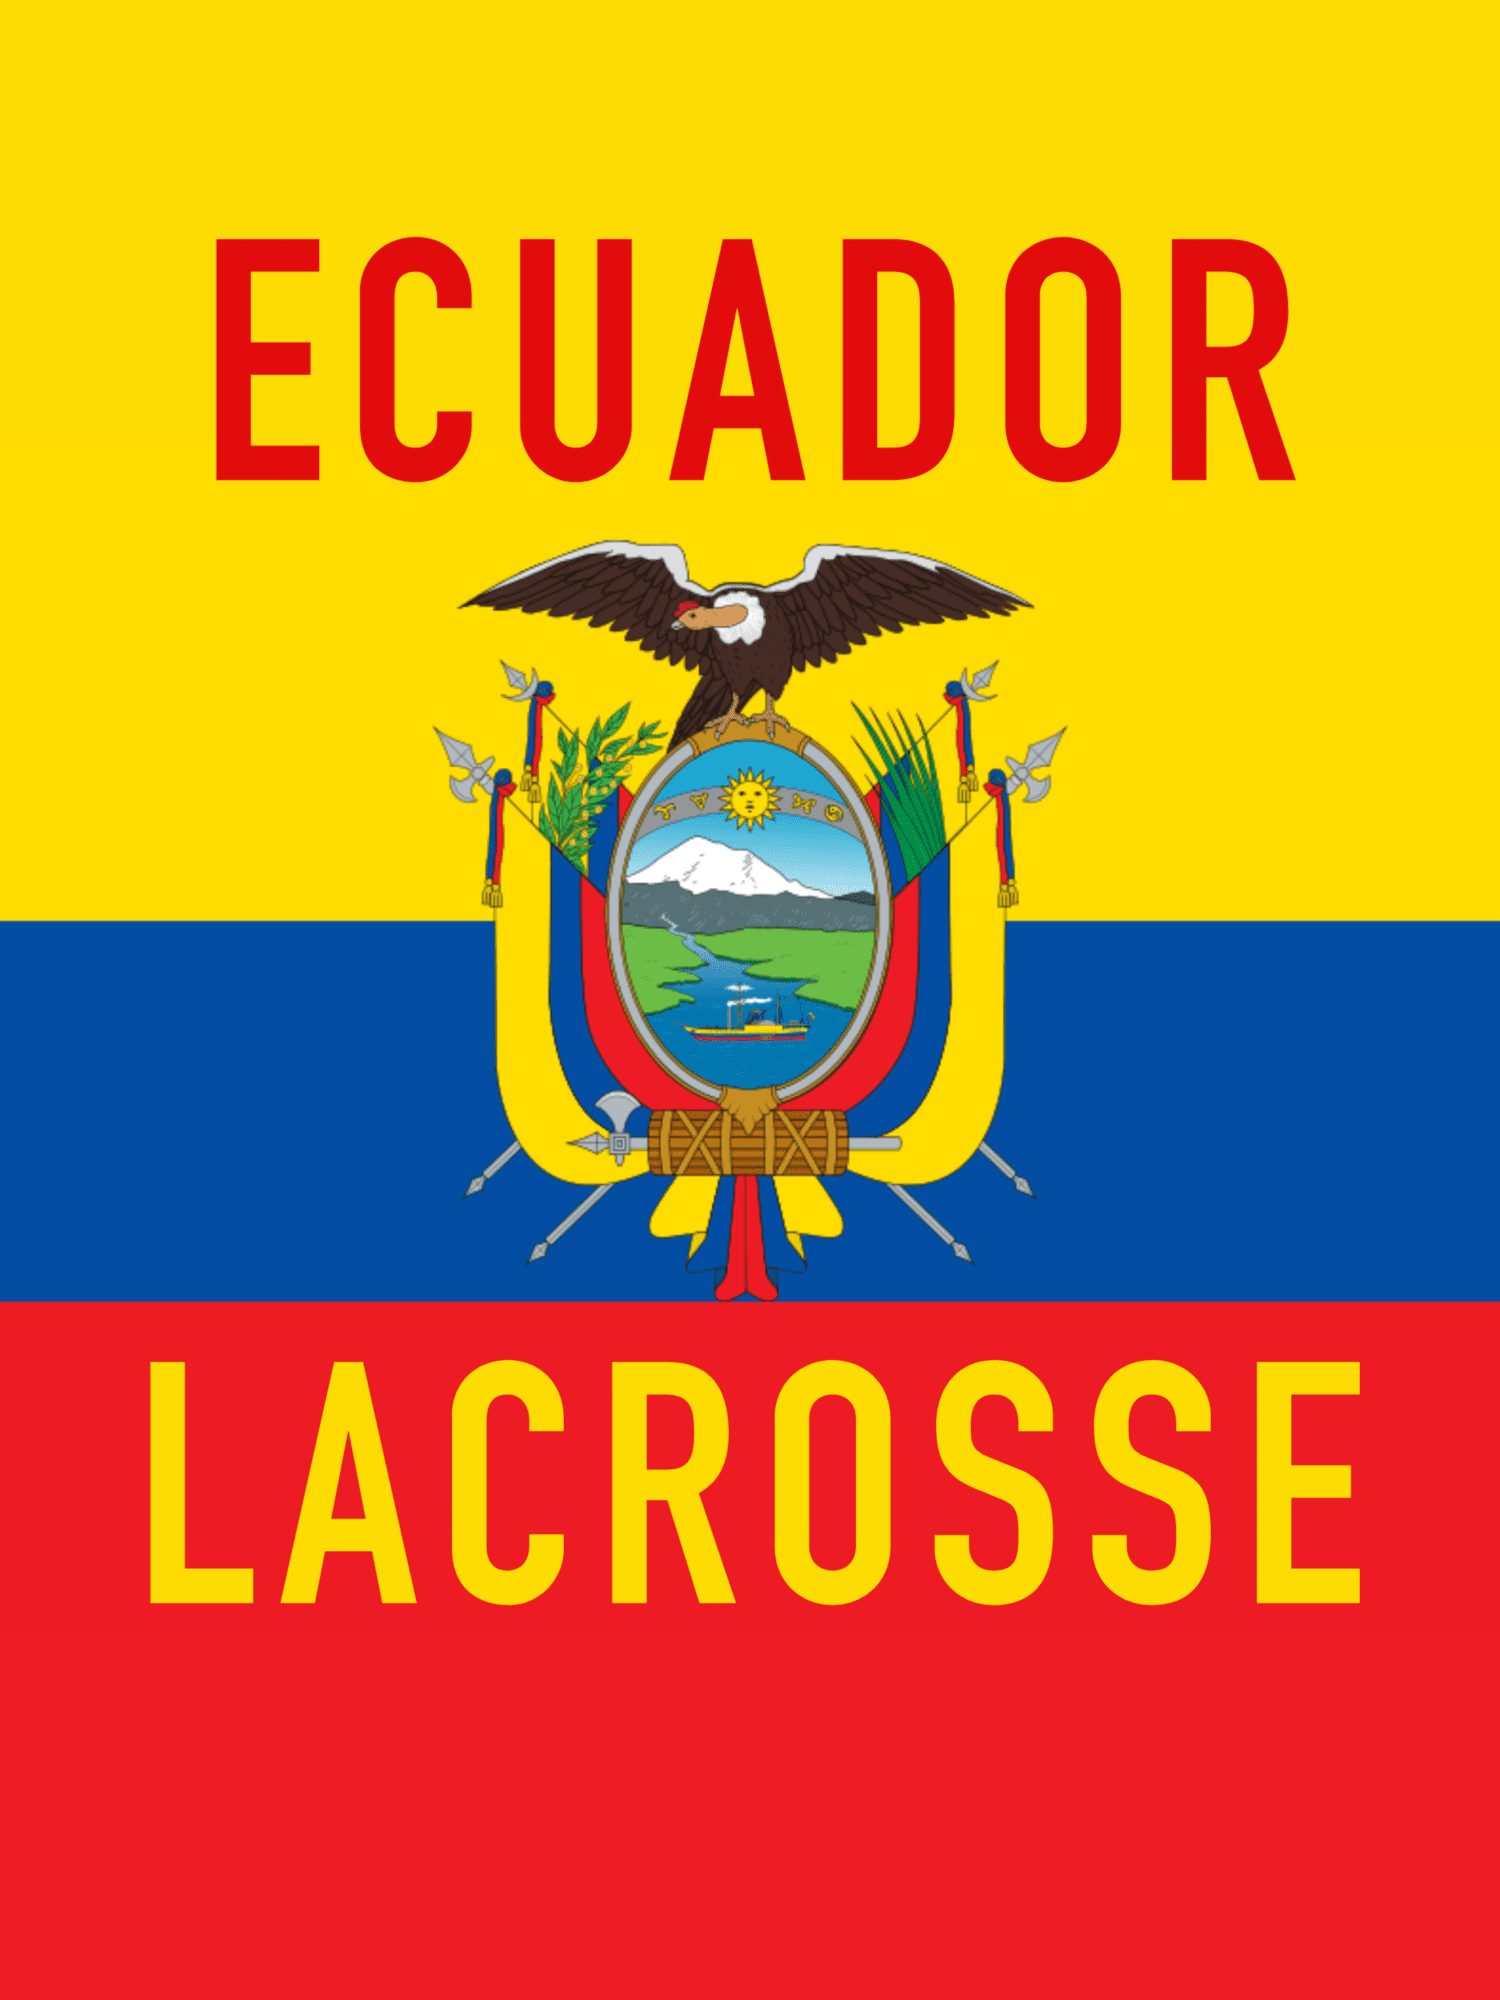 Ecuador Lacrosse